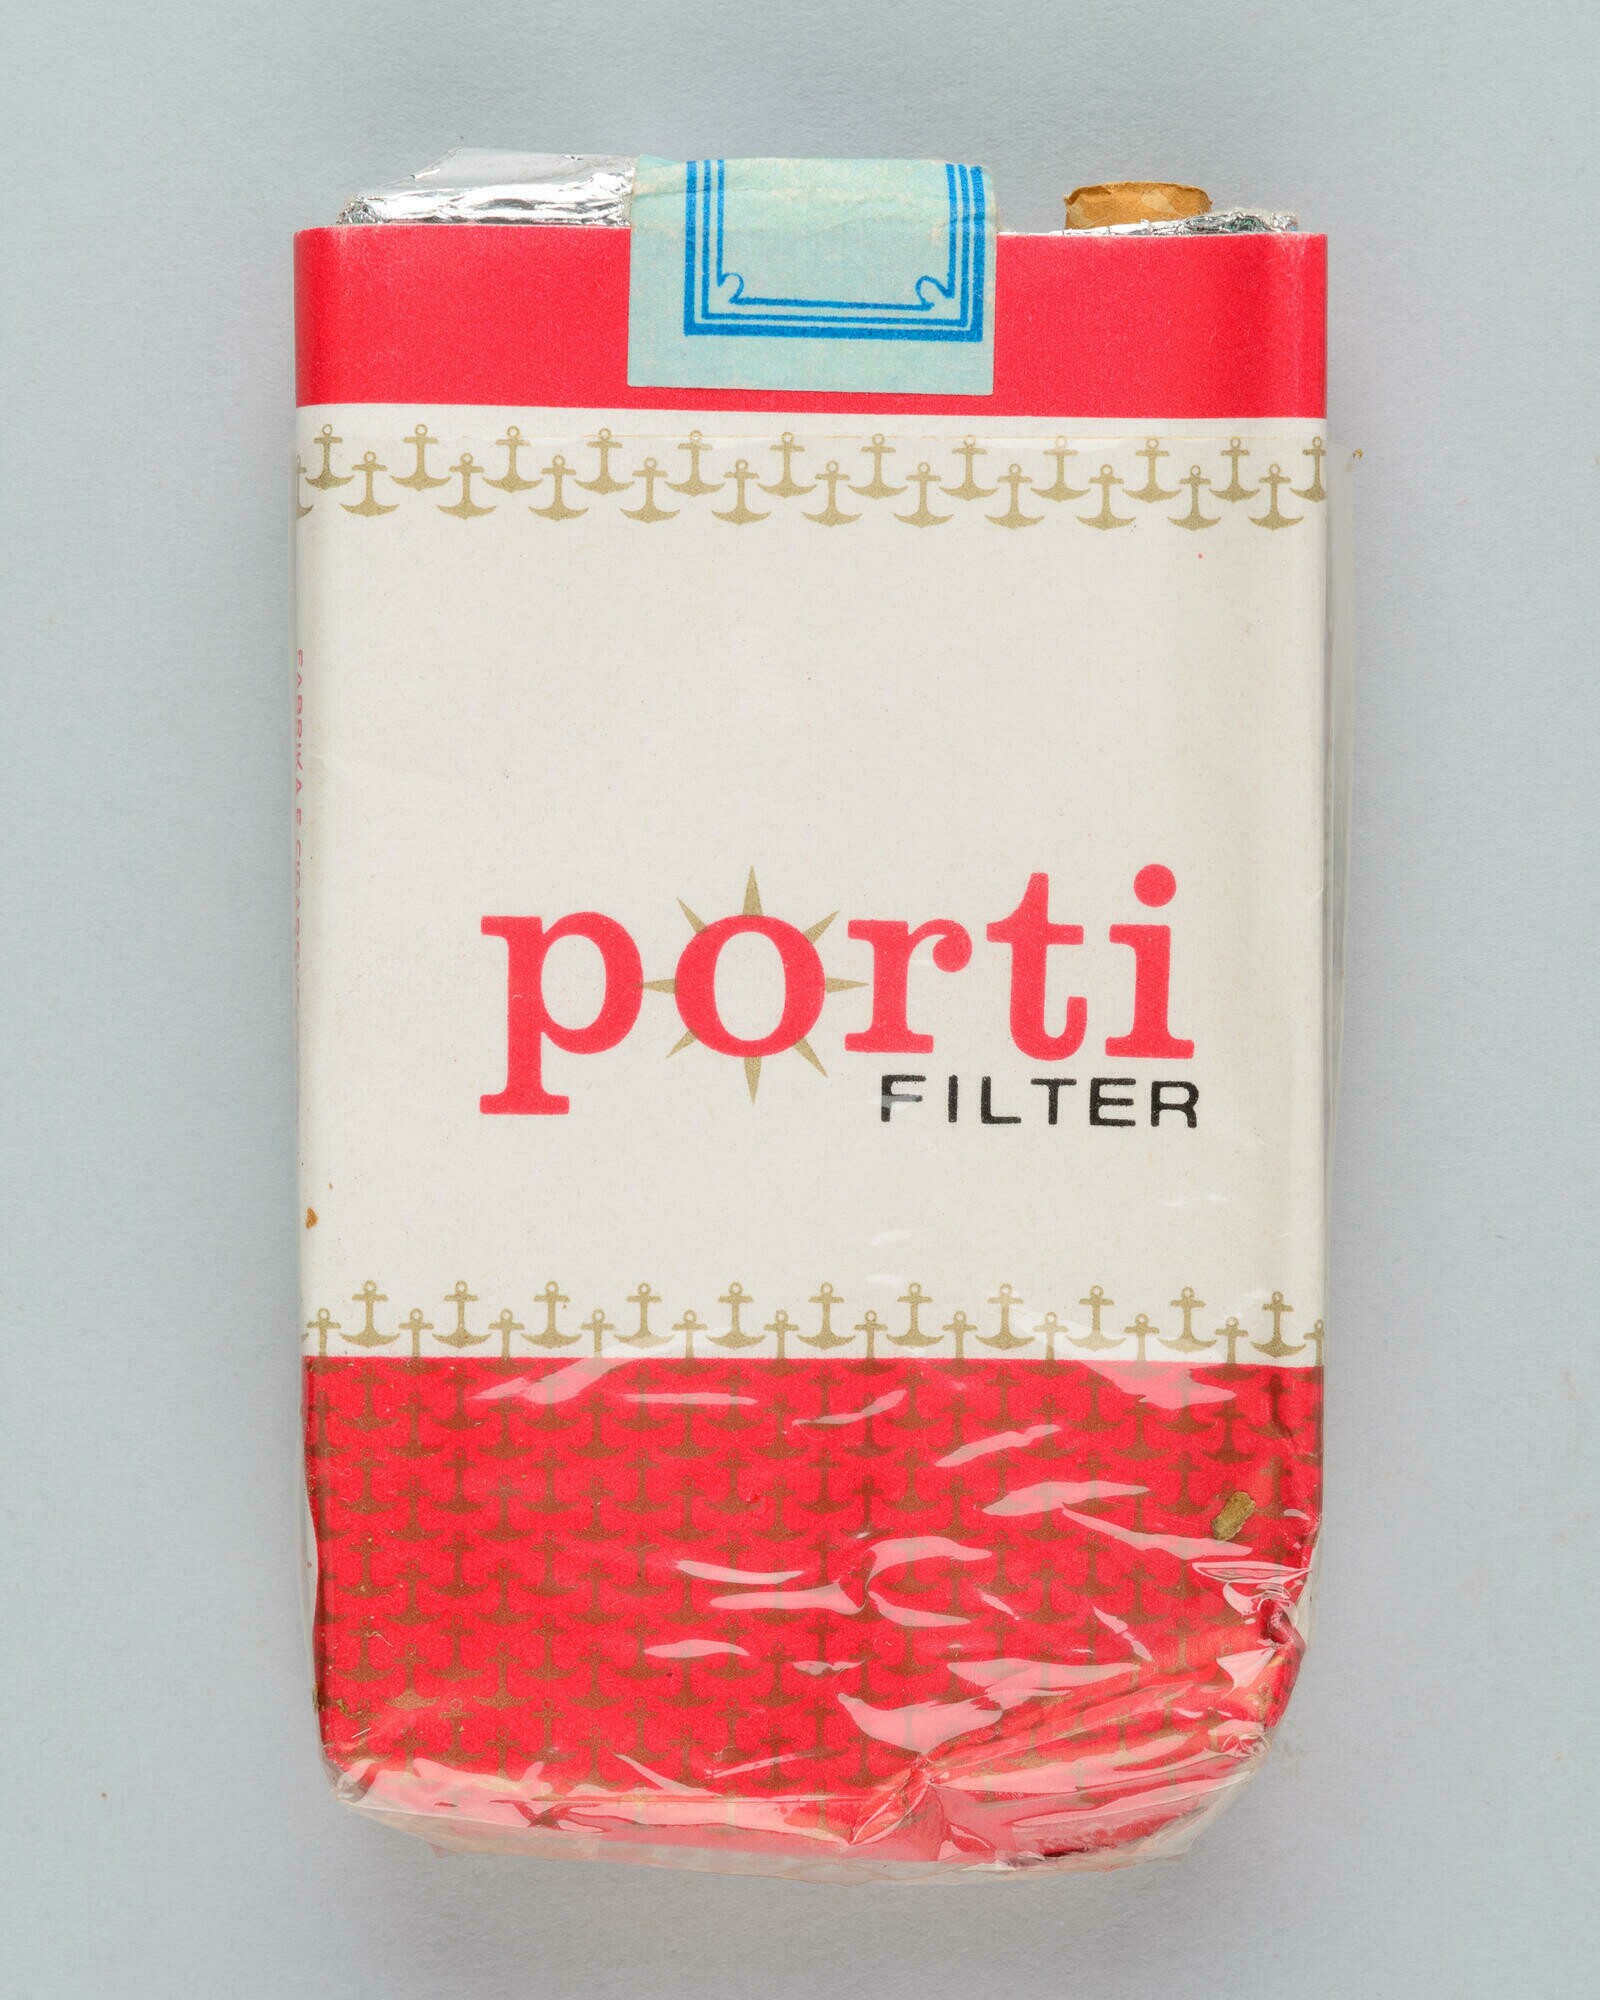 https://asset.museum-digital.org/sachsen/images/2/202202/45545/zigarettenschachtel-der-marke-porti-filter-45545.jpg